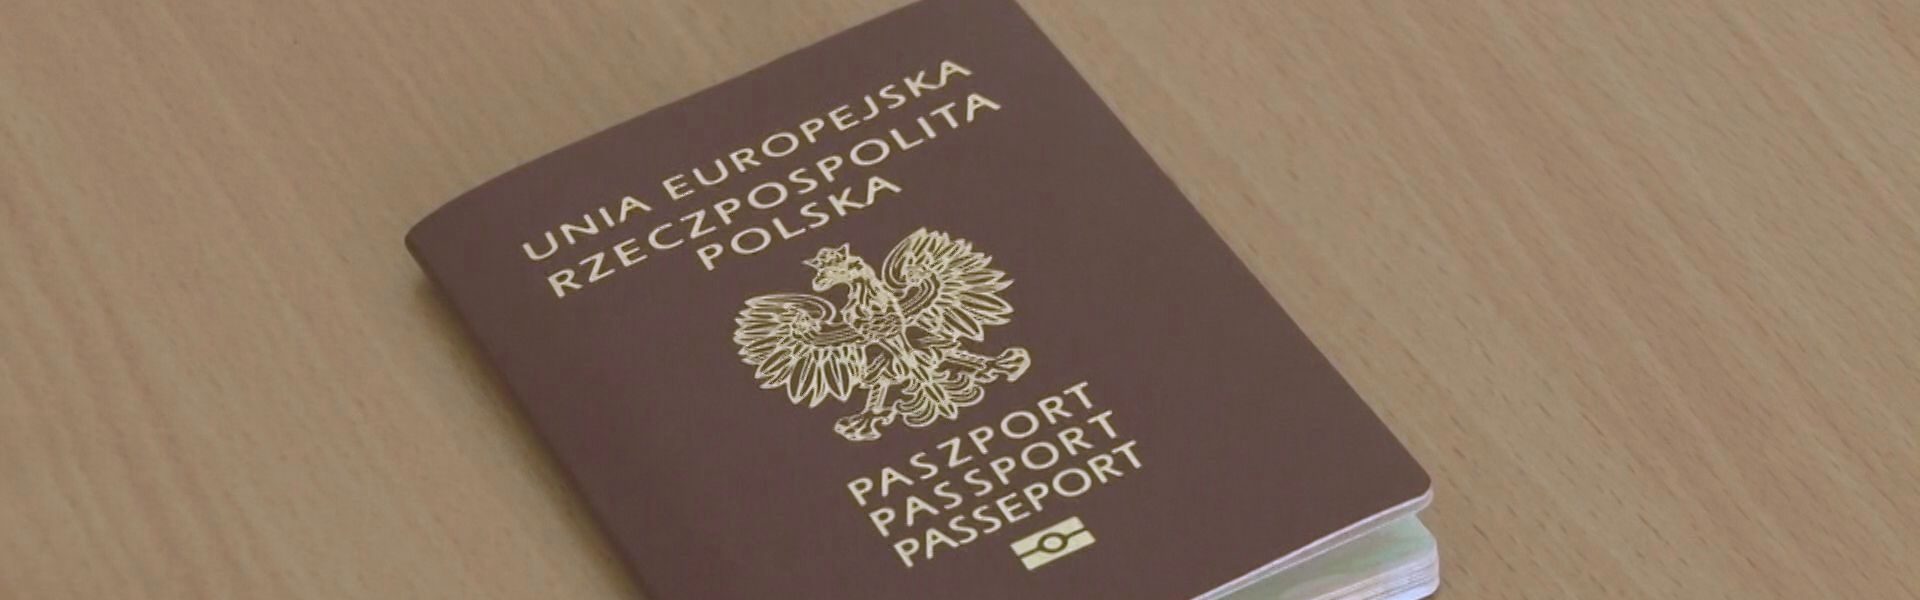 Punkty paszportowe przeżywają oblężenie